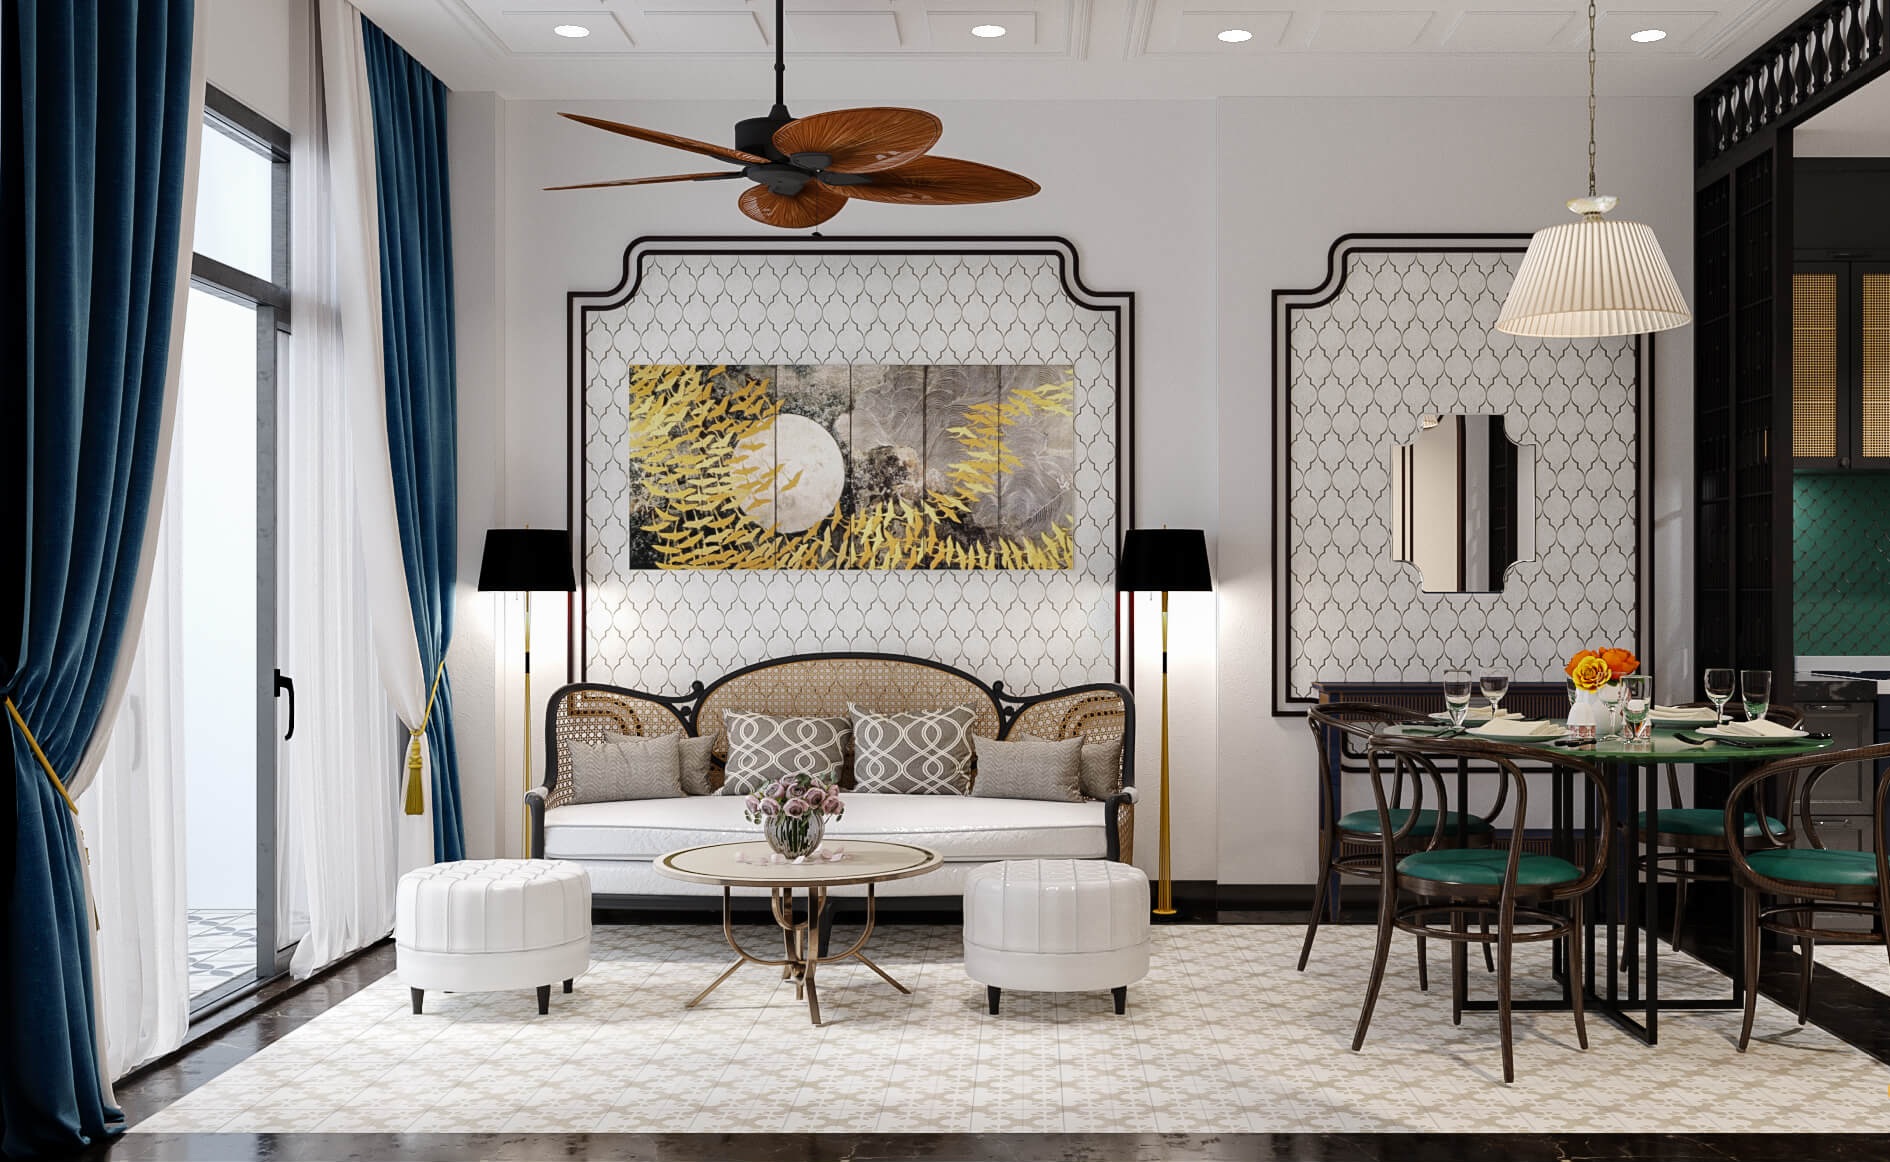 Bộ sofa phong cách Indochine ton sur ton với thảm trải sản họa tiết hoa văn tinh tế 